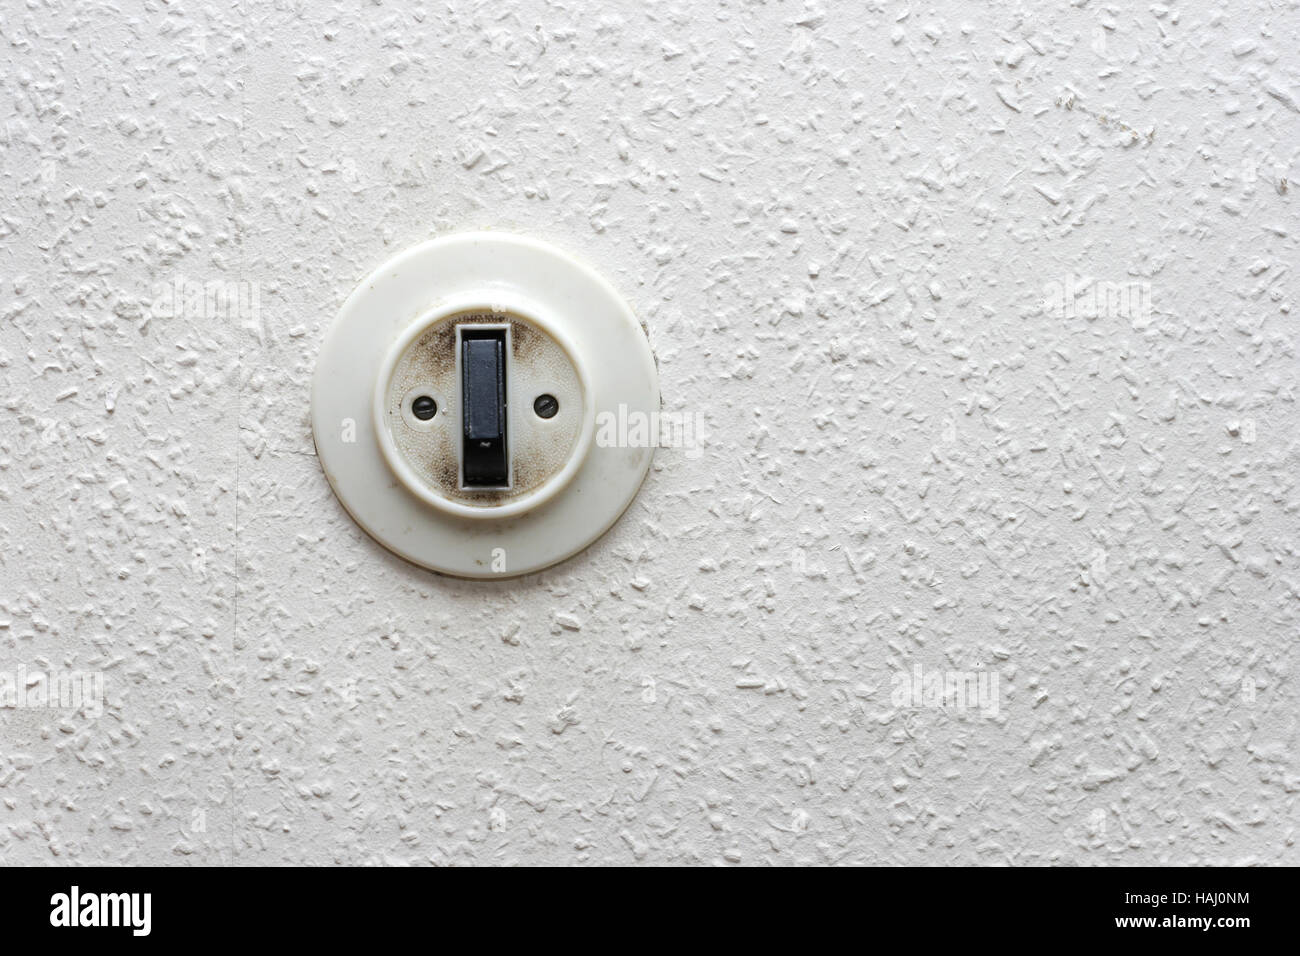 wall light switch Stock Photo